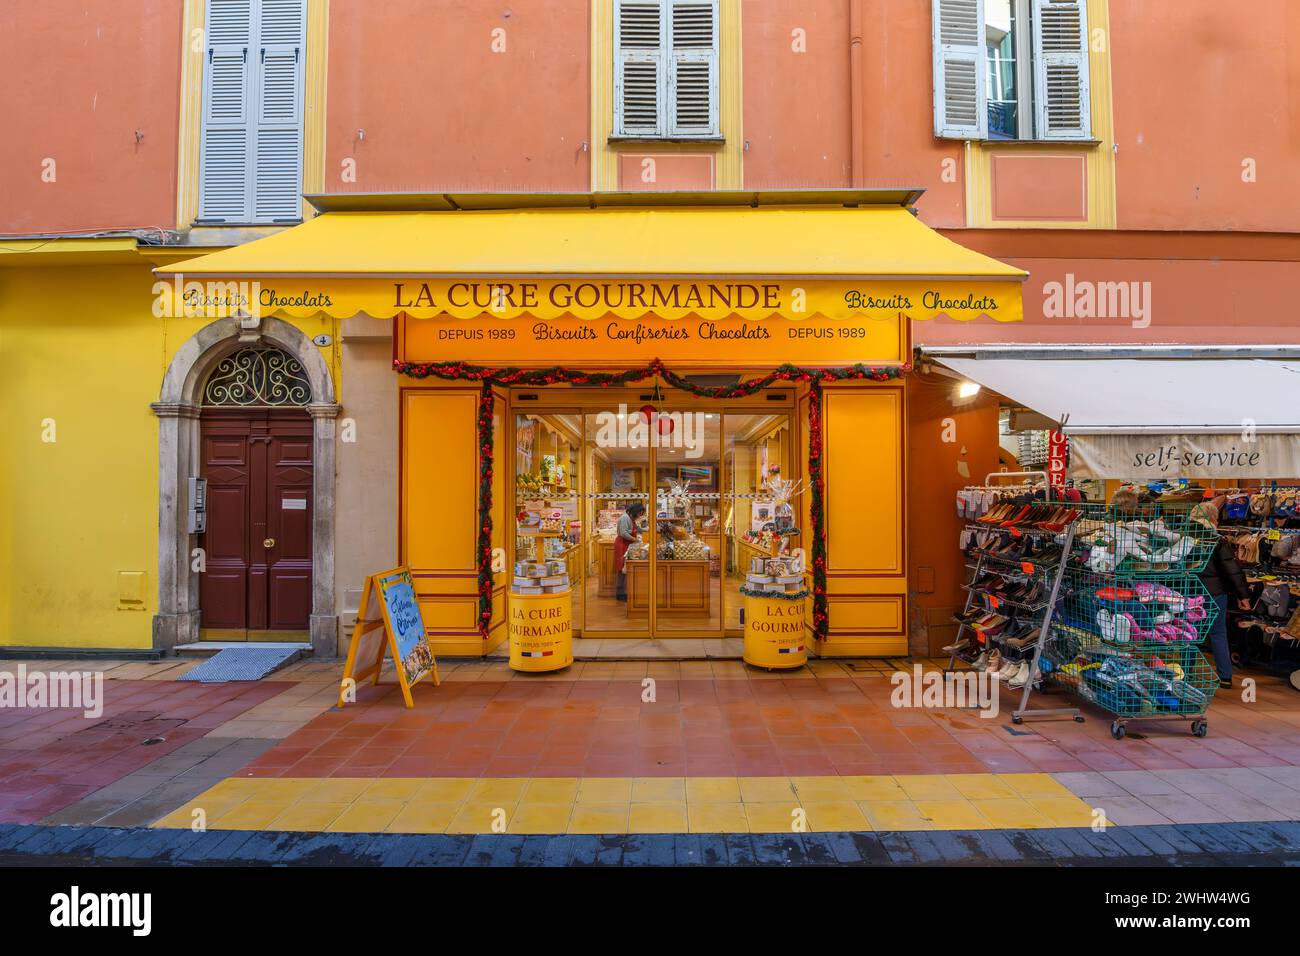 Allgemeiner Blick auf ein La Cure Gourmande Geschäft, eine traditionelle französische Kekse, Süßigkeiten und Schokoladenbäckerei, in der historischen Altstadt von Menton, Frankreich Stockfoto